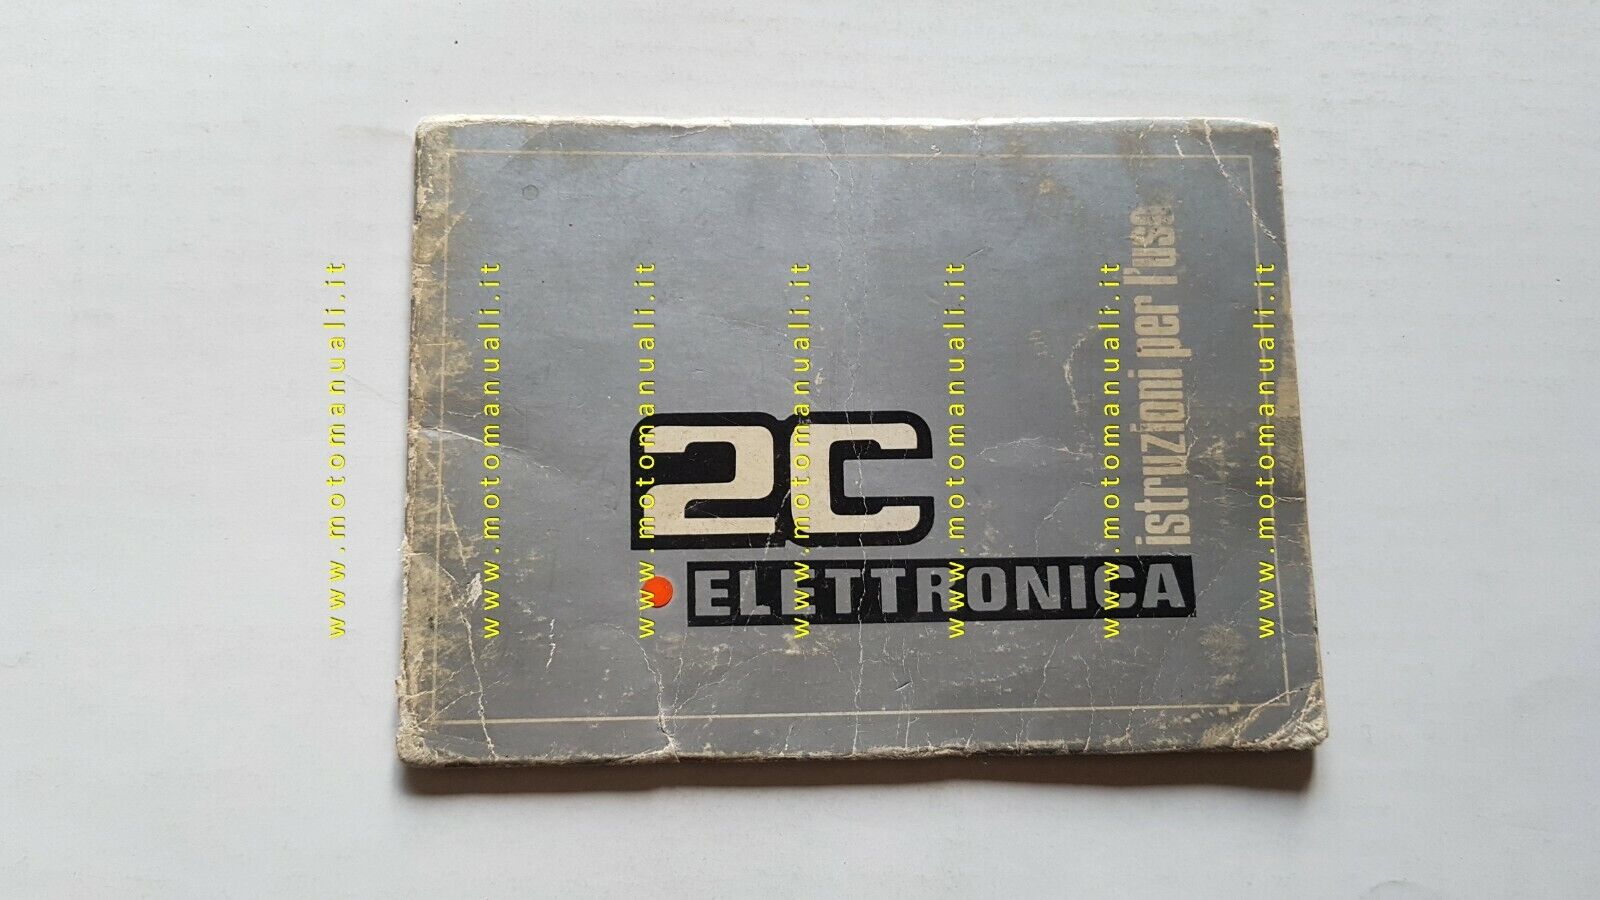 Benelli 125-250 2C Elettronica 1974 manuale uso originale owner's manual